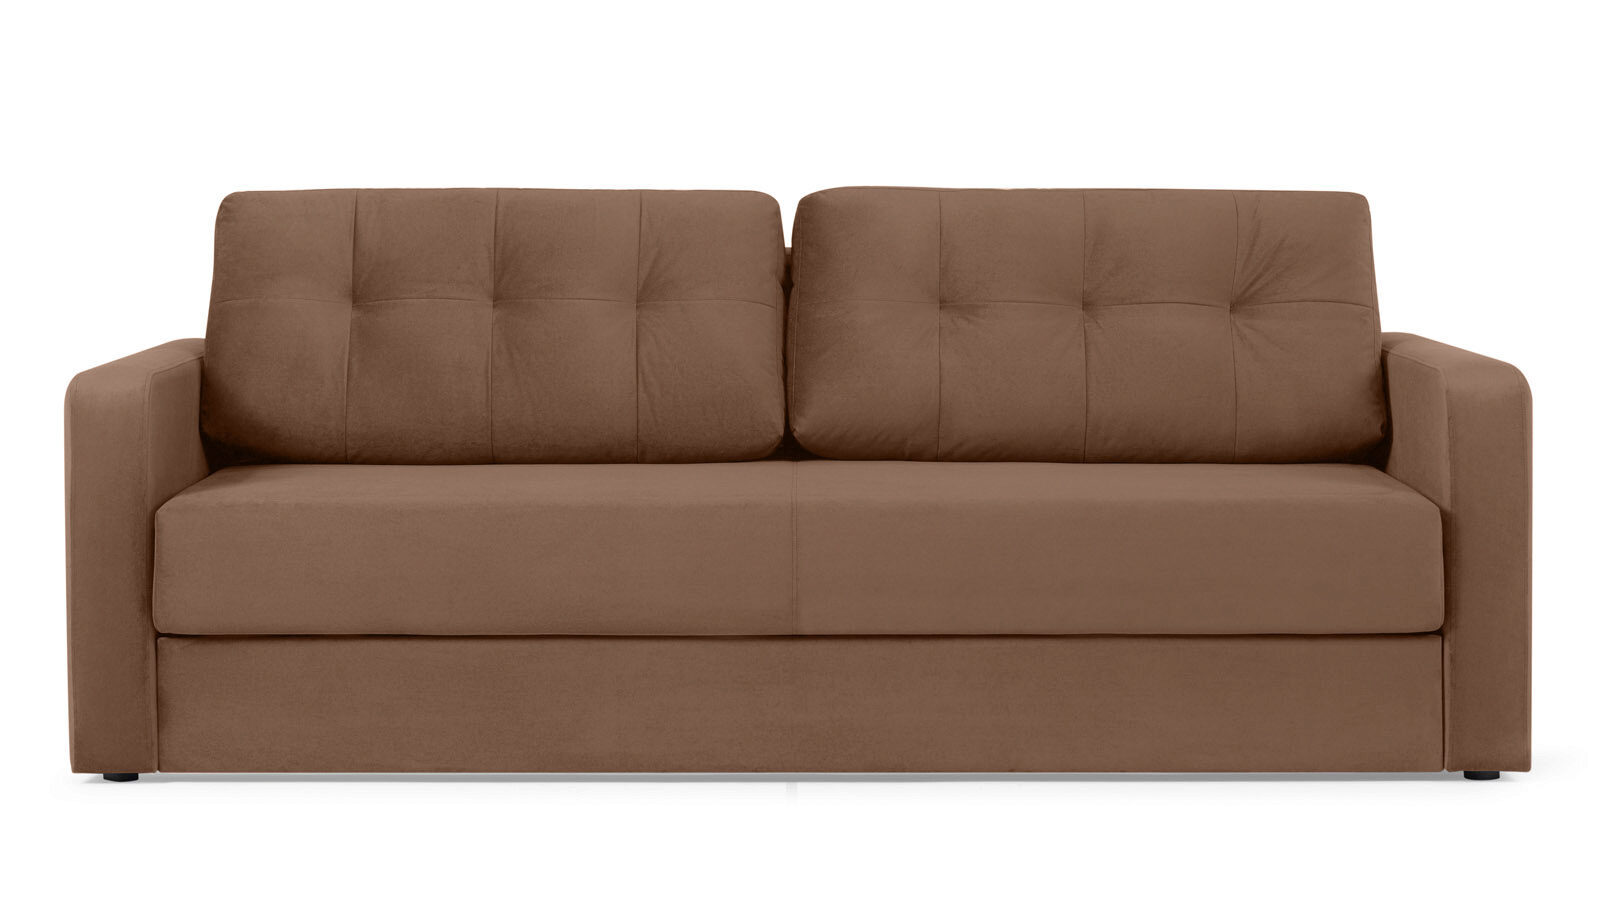 Прямой диван Loko Pro с широкими подлокотниками, с матрасом комбинированной жесткости